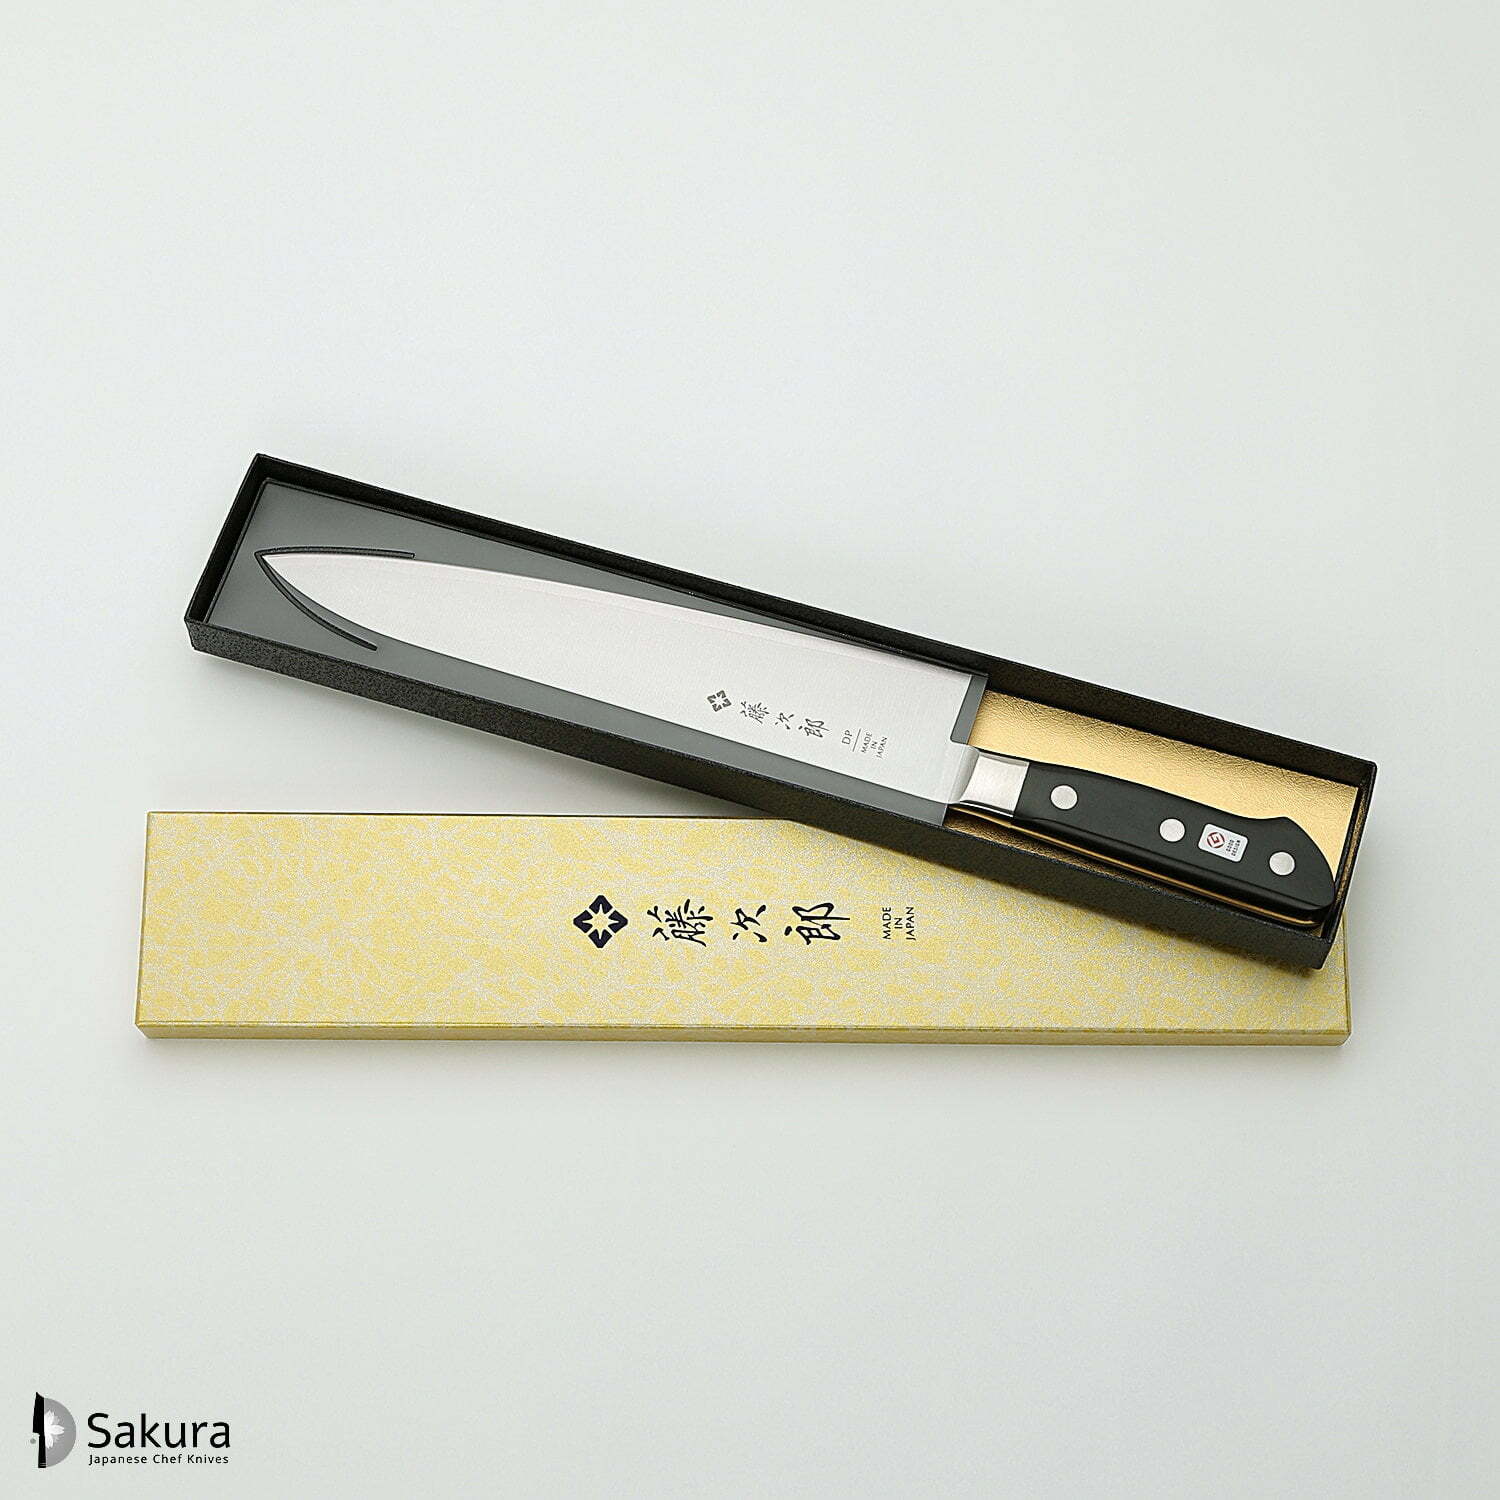 סכין שף רב-תכליתית גִּיוּטוֹ 240מ״מ מחוזקת 3 שכבות: פלדת פחמן יפנית VG-10 עטופה פלדת אל-חלד גימור מט מלוטש טוג׳ירו יפן